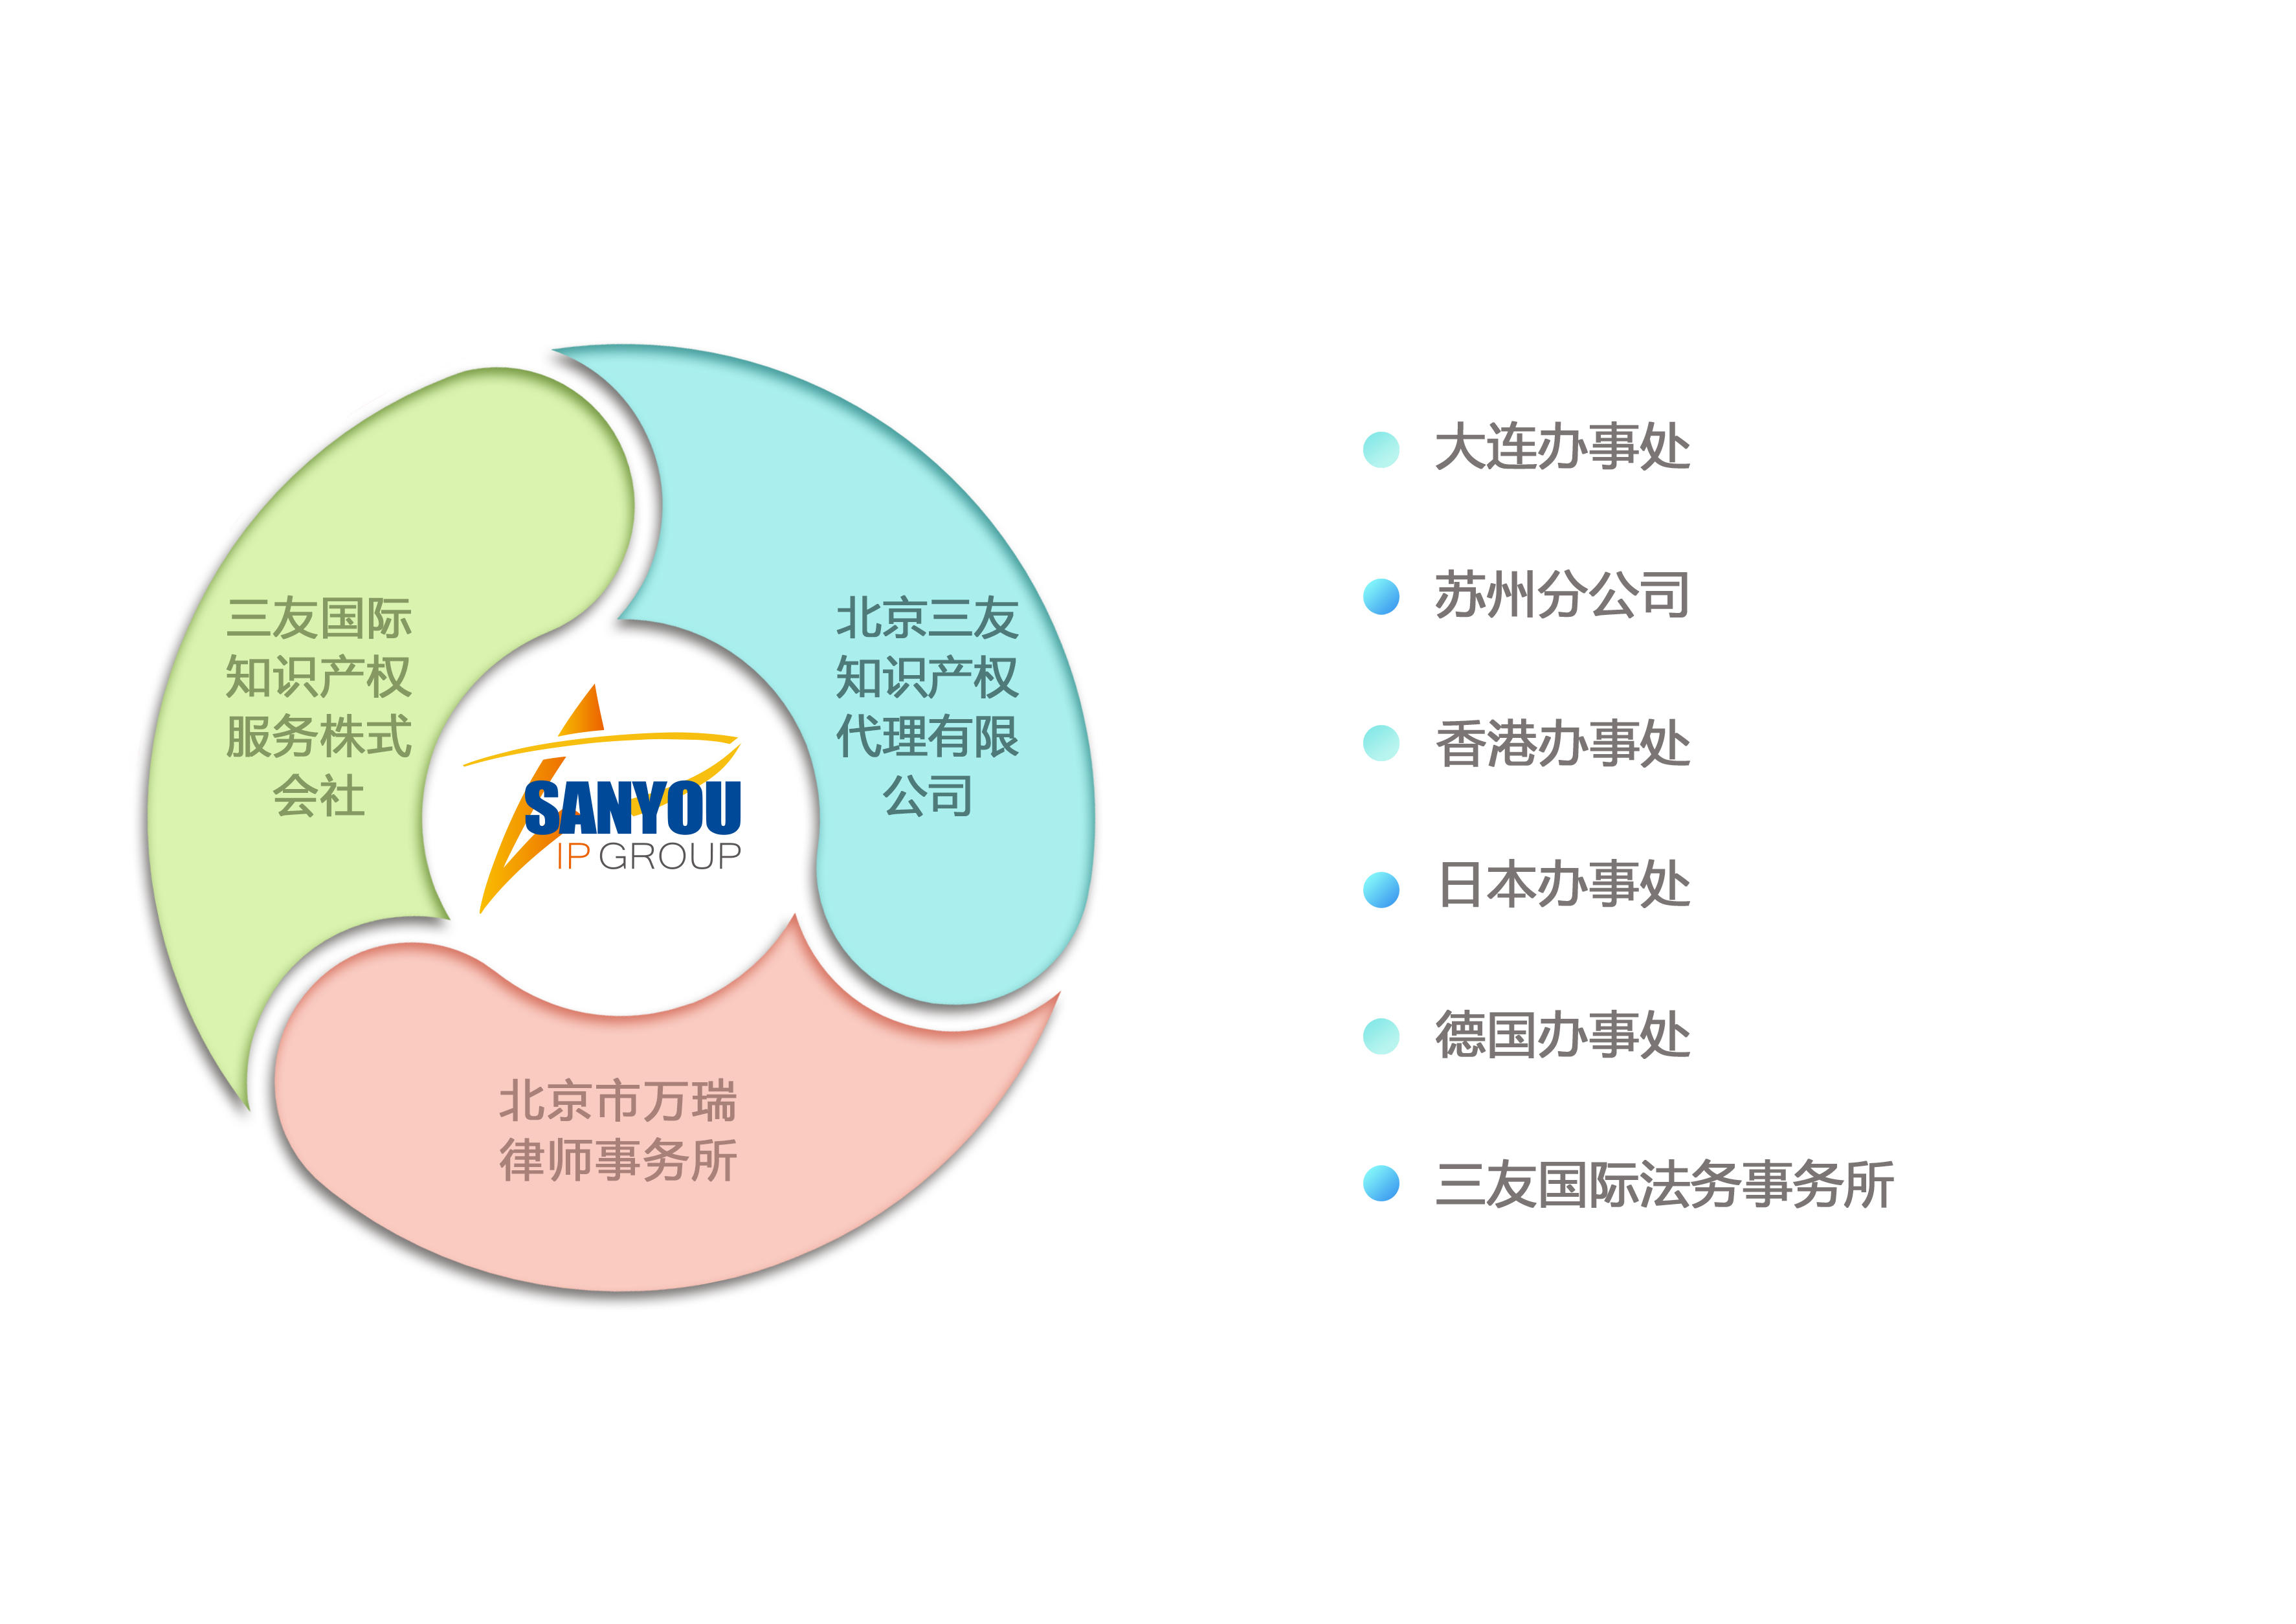 2020-03-25组织架构图02-中文 .JPG